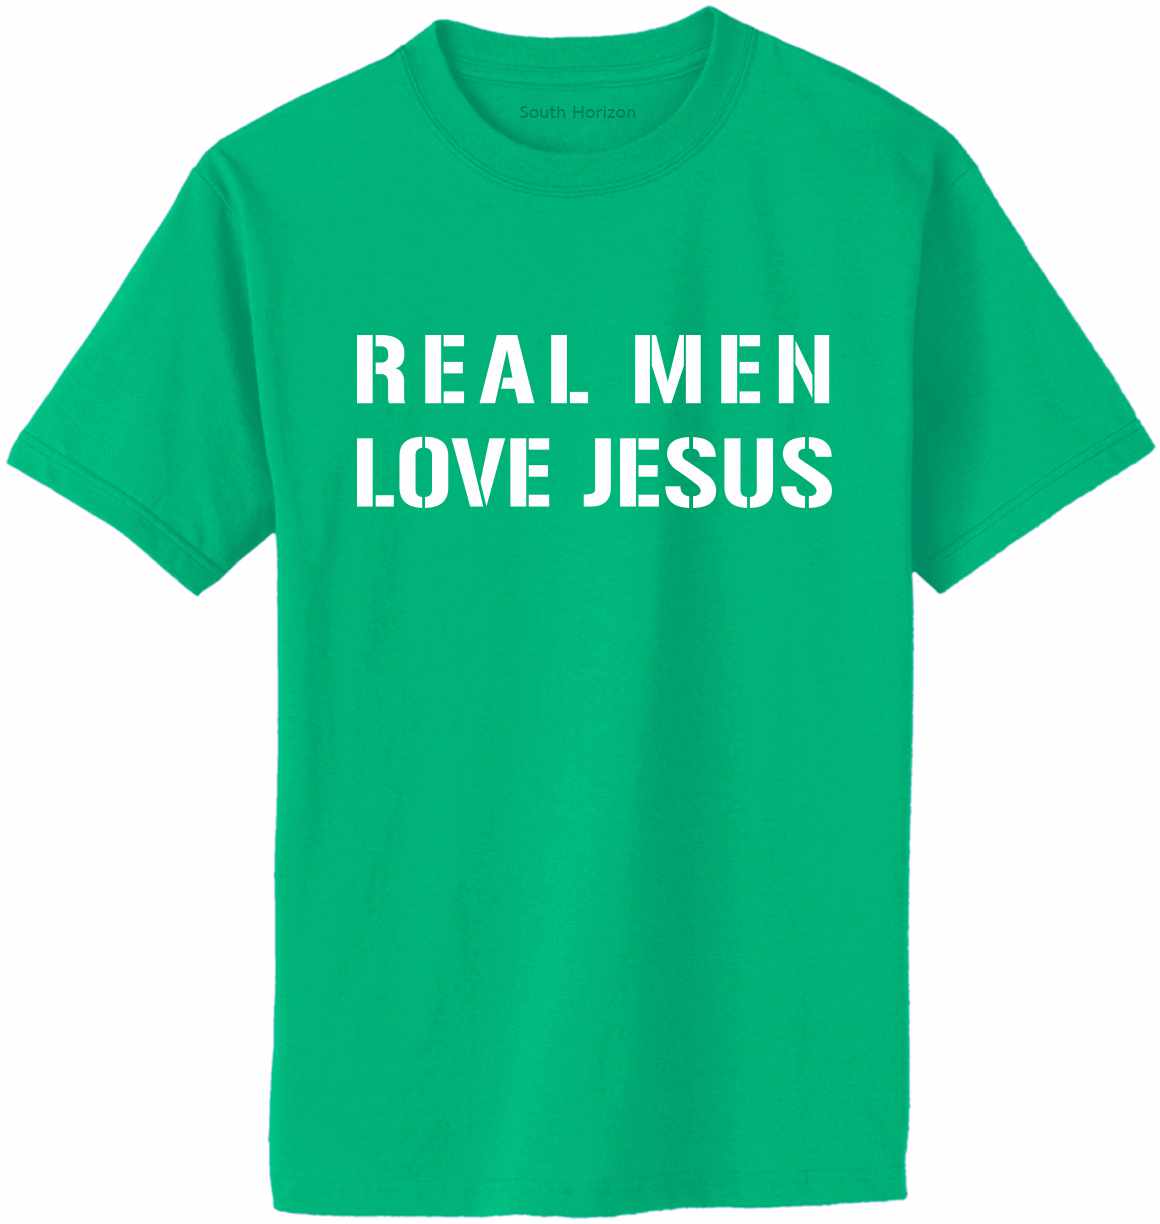 REAL MEN LOVE JESUS Adult T-Shirt